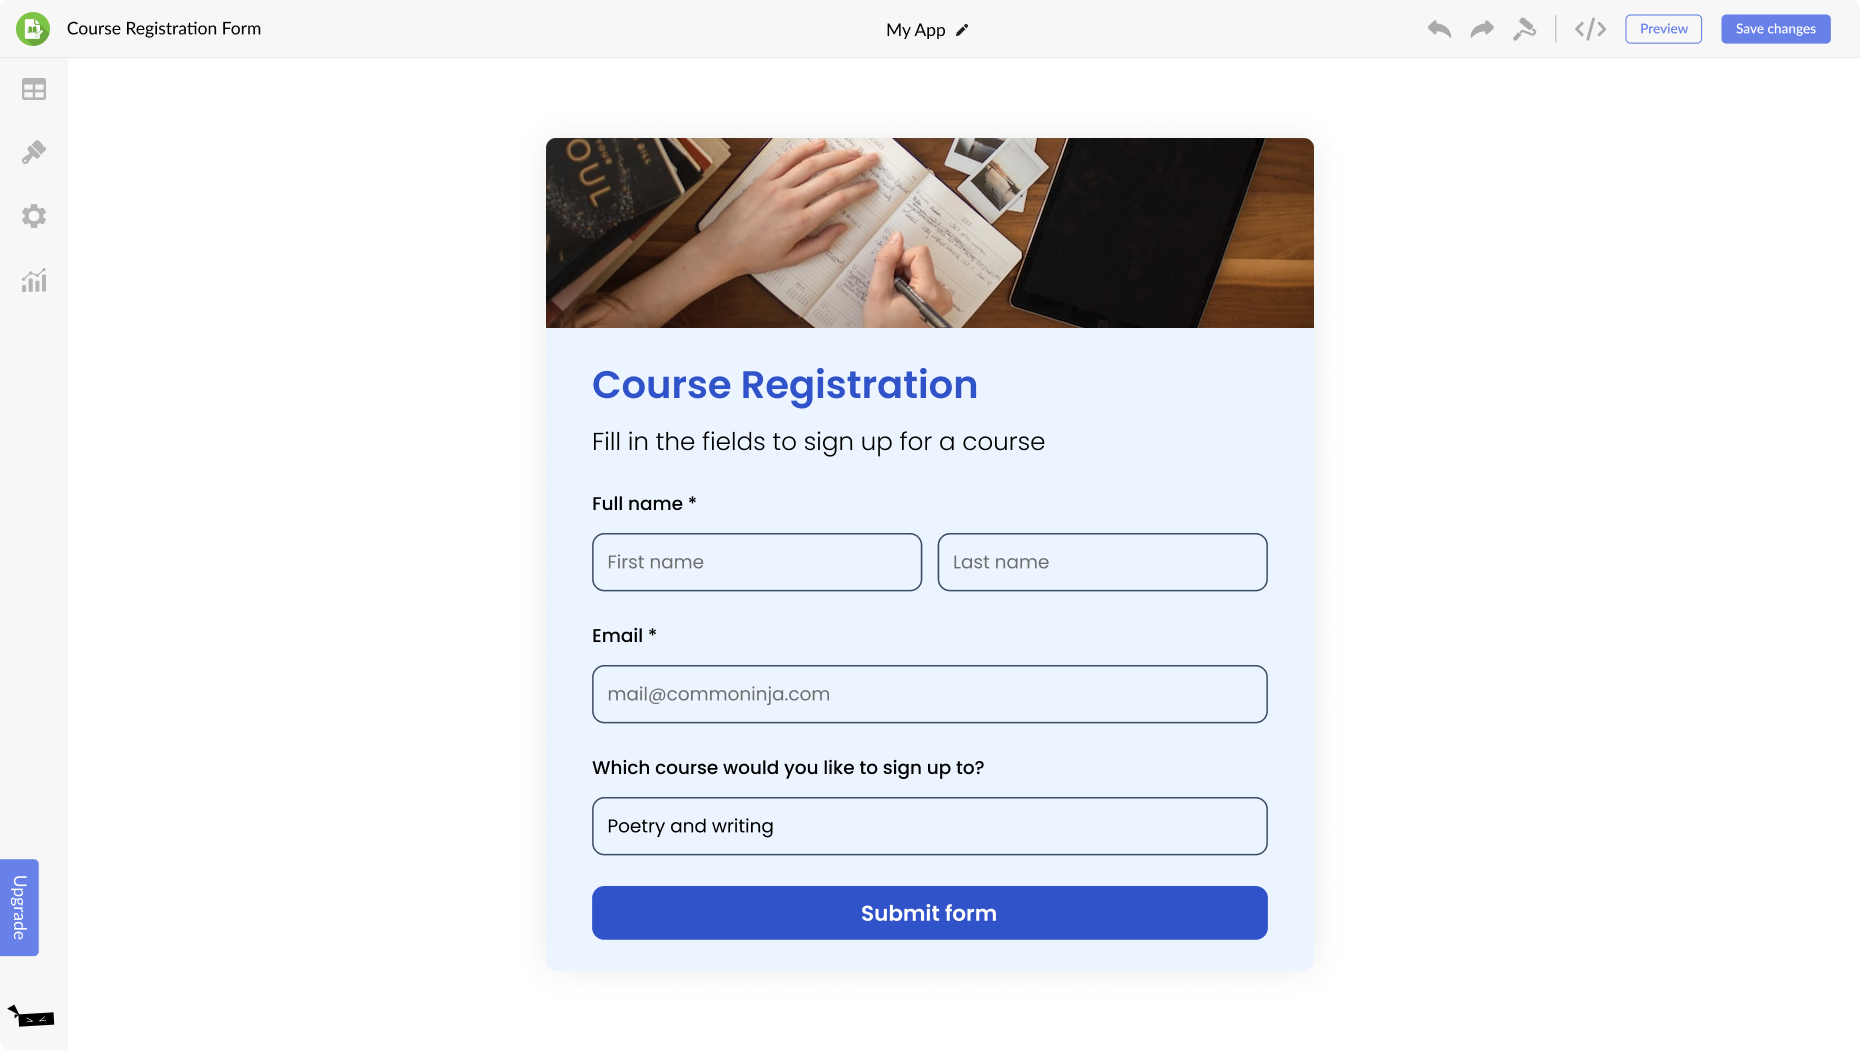 Course Registration Form for Overblog